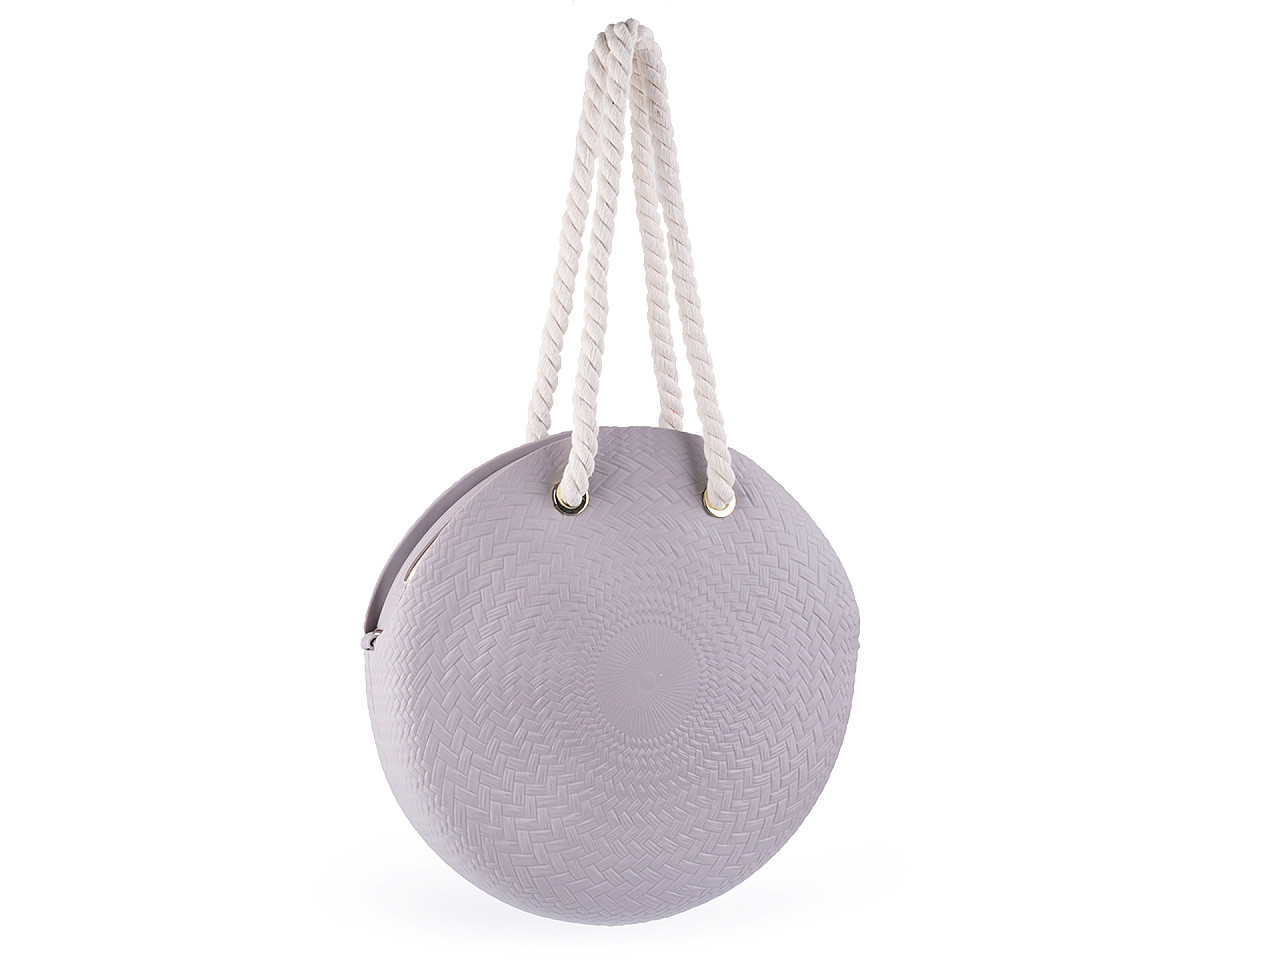 Runde Damenhandtasche aus Silikon Ø40 cm mit Reißverschluss, hellgrau, 1 Stück